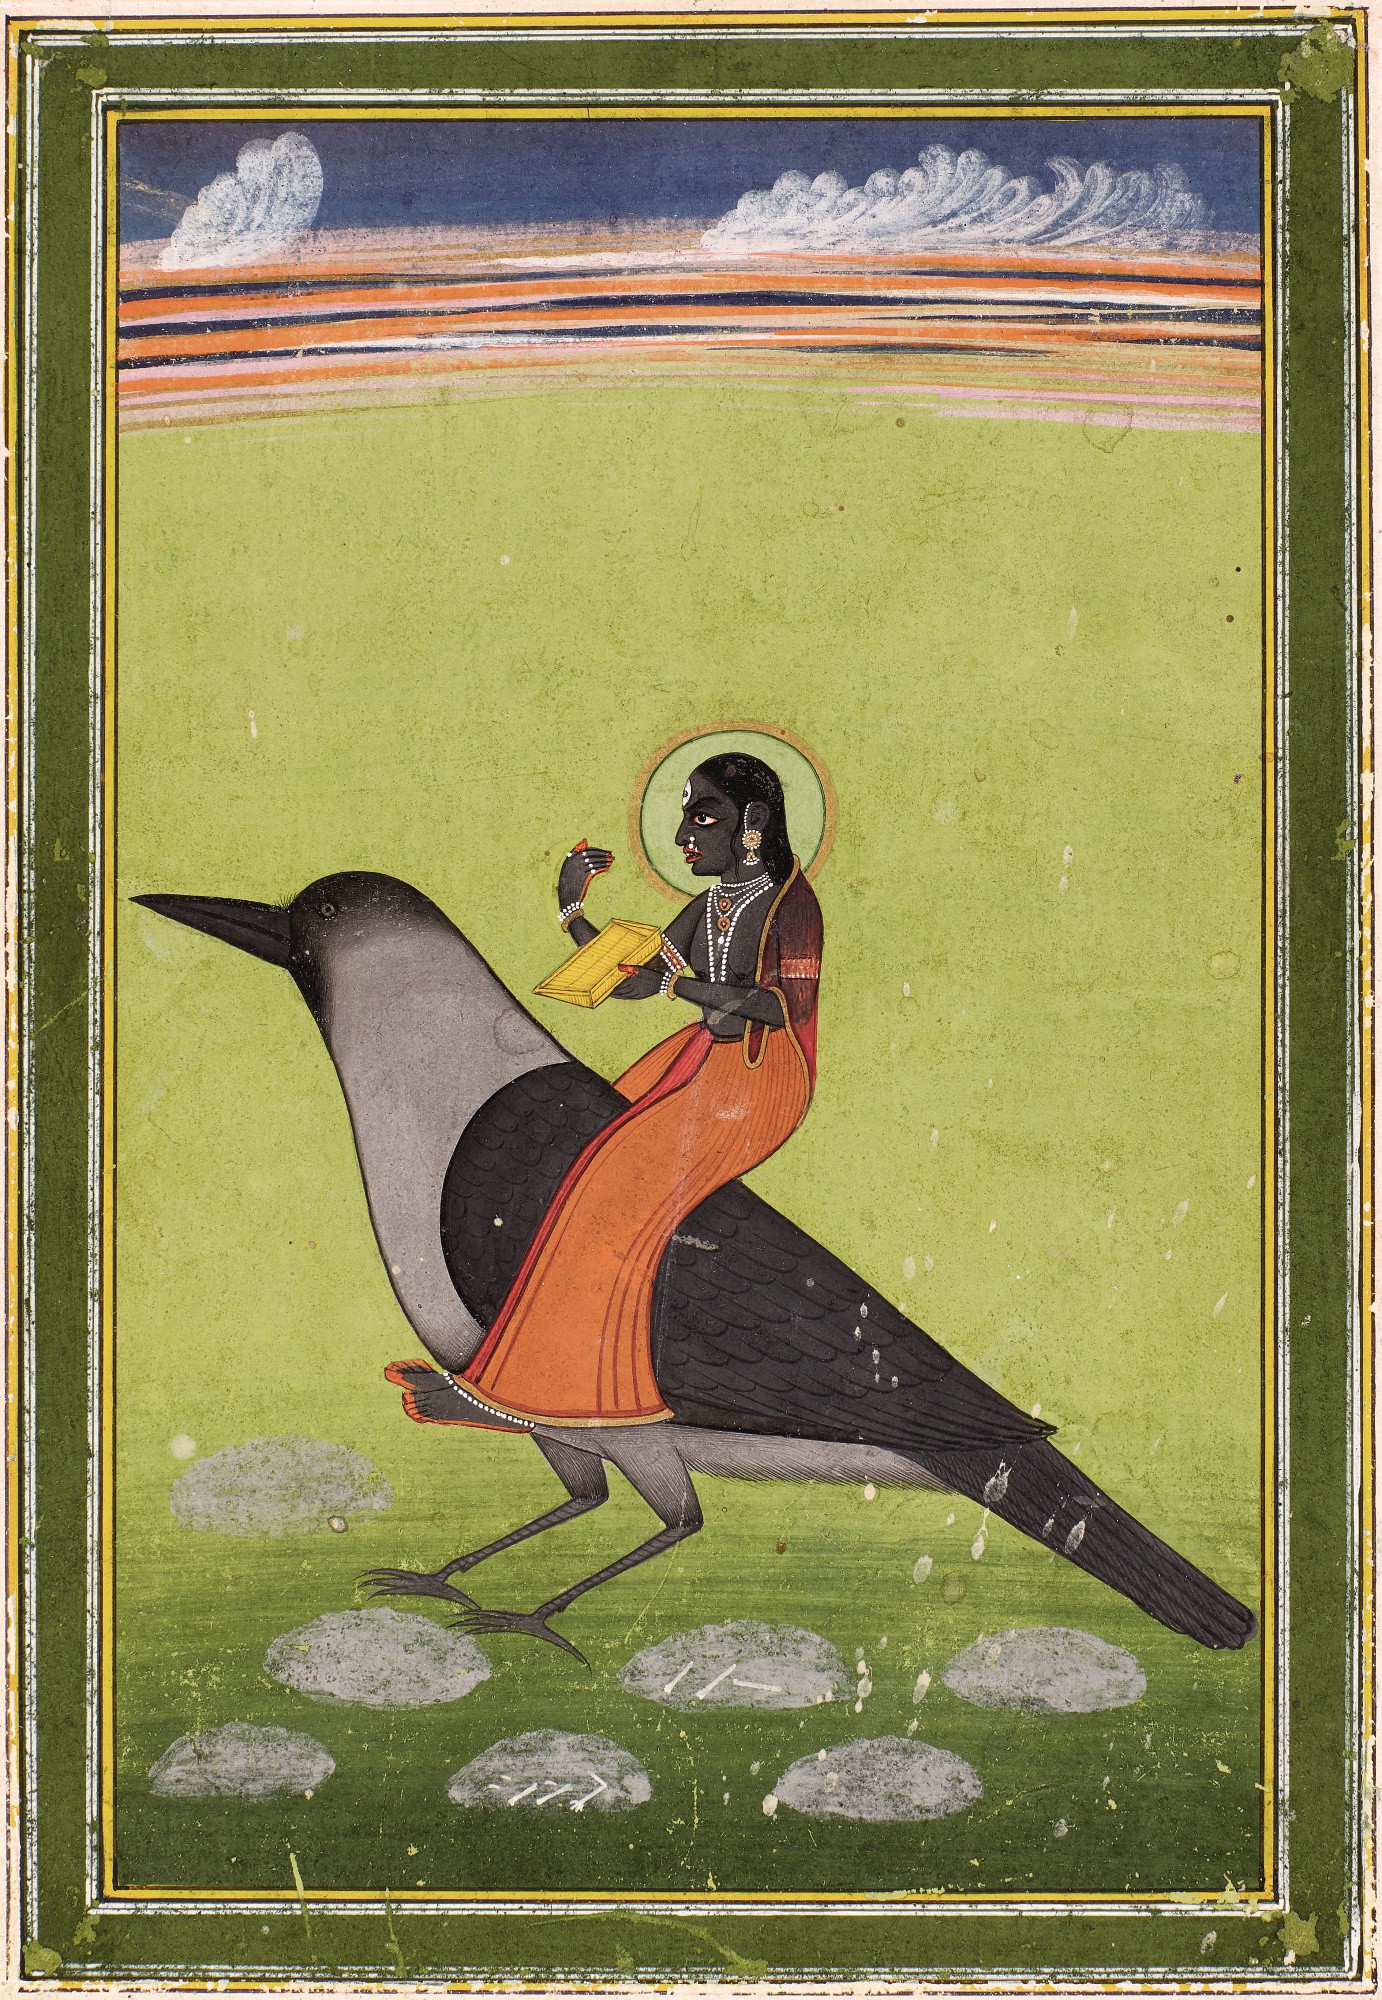 Dhumavati en un cuervo by Artista anónimo  - c. 1830 - 22,2 x 13,3 cm Colección privada